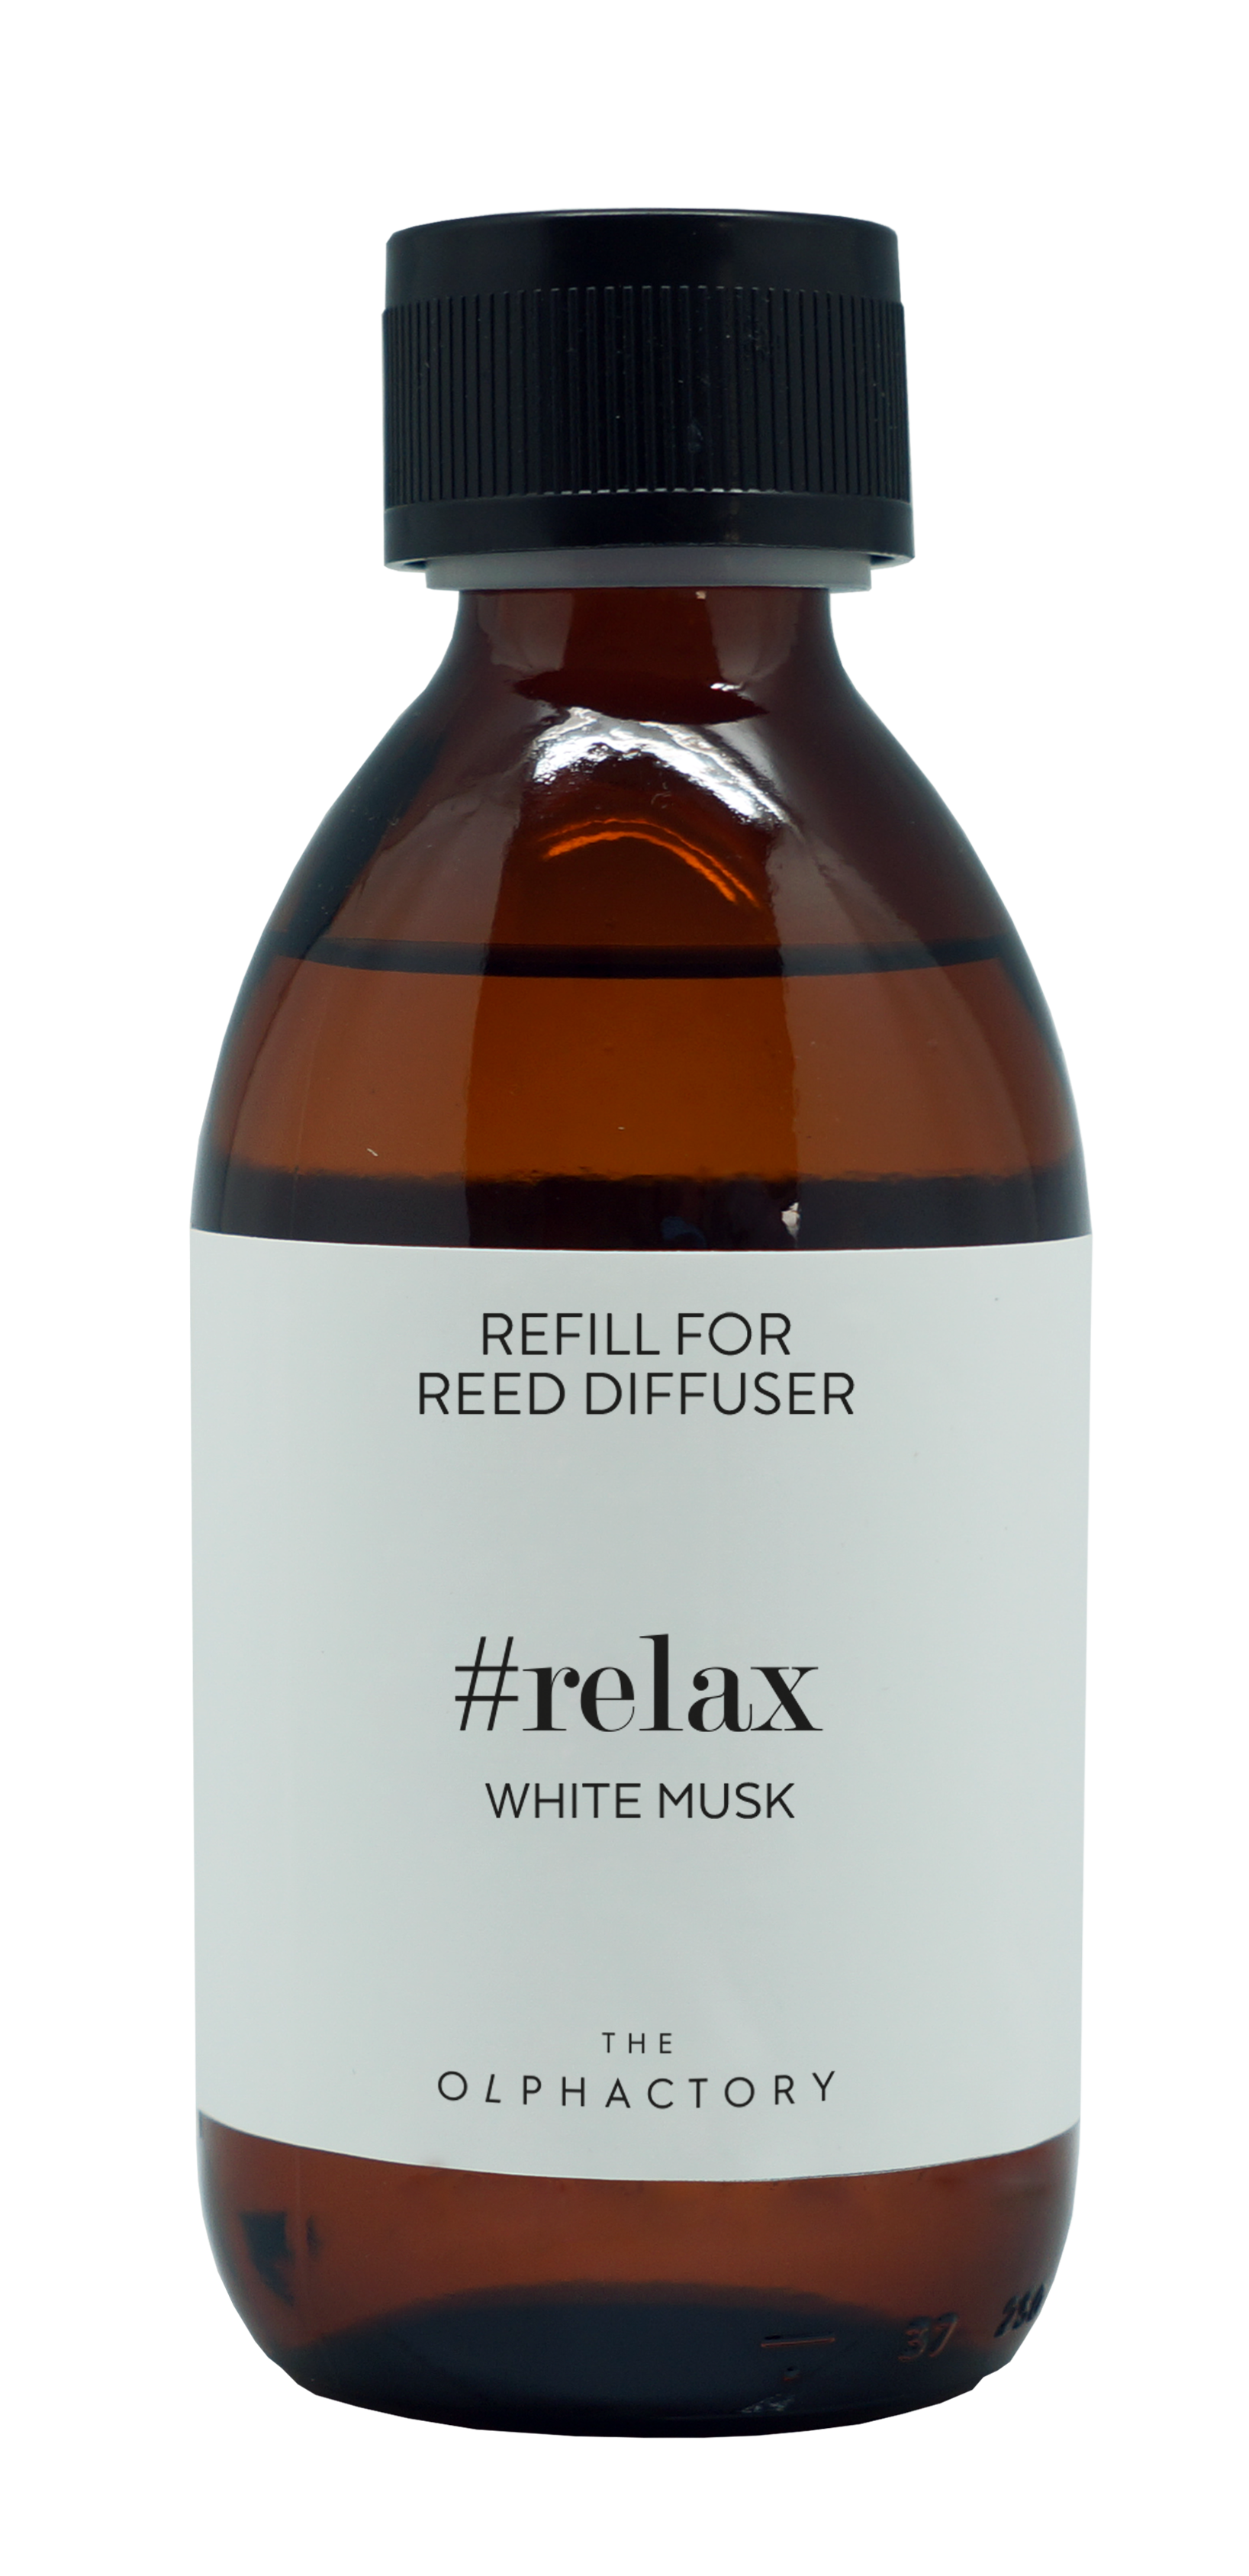 מילוי למפיץ ריח האולפקטורי Relax white musk